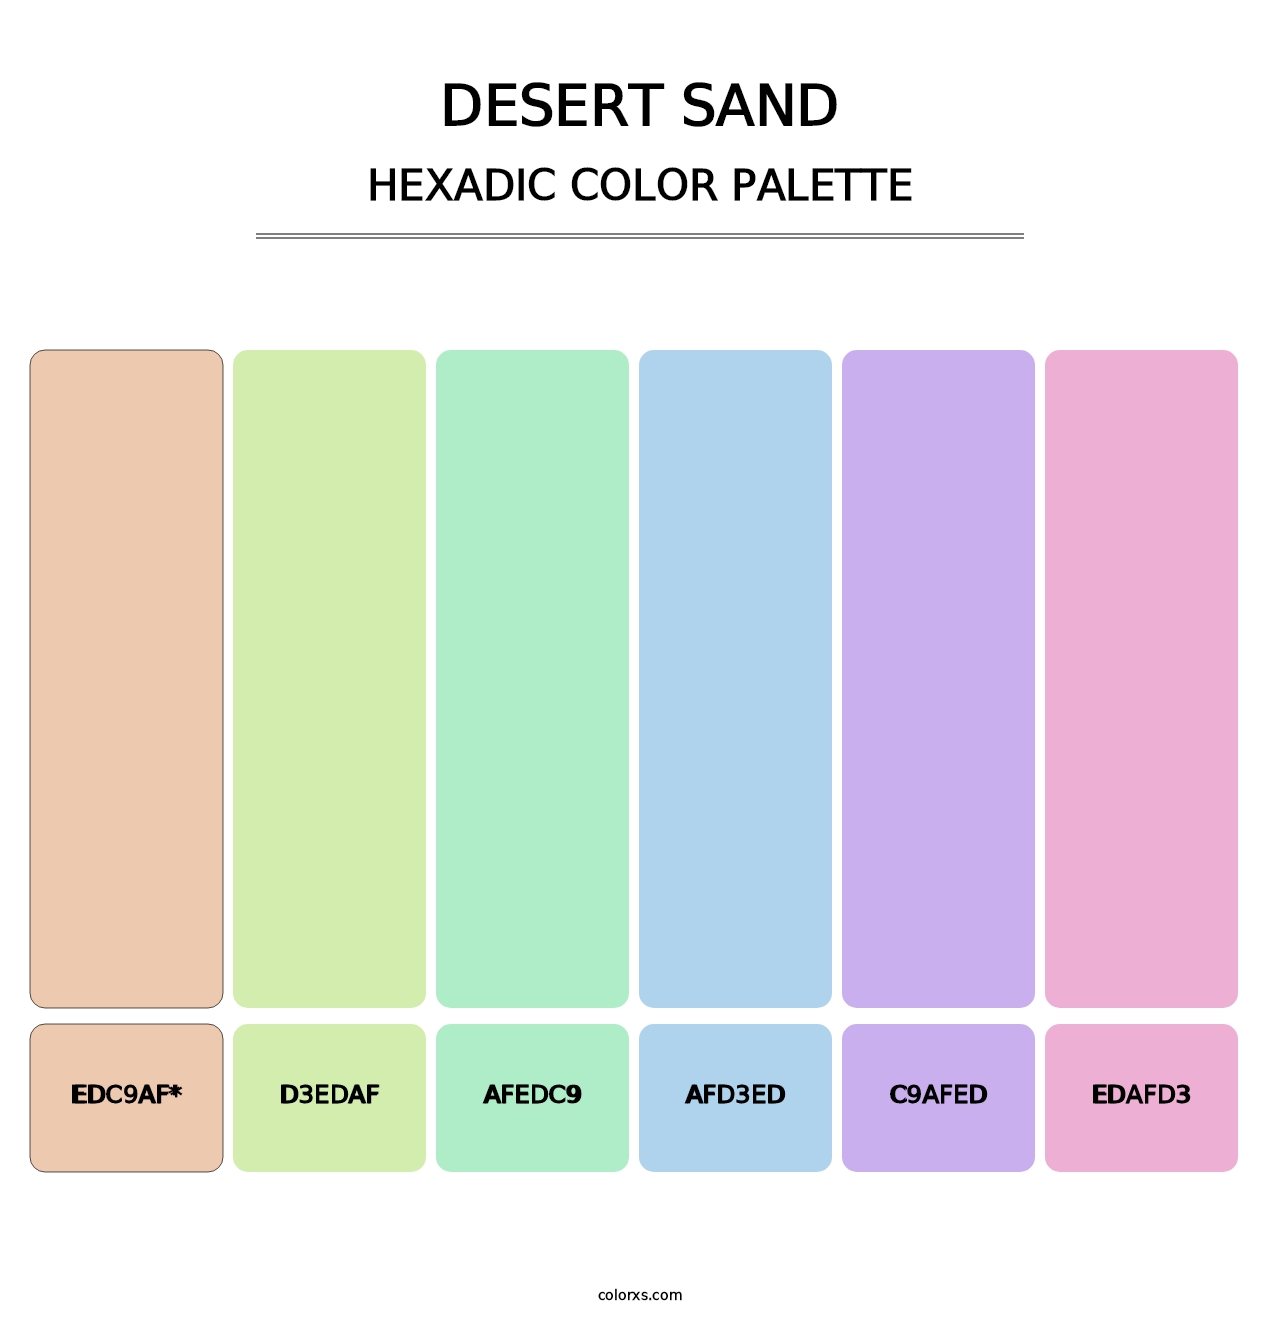 Desert Sand - Hexadic Color Palette